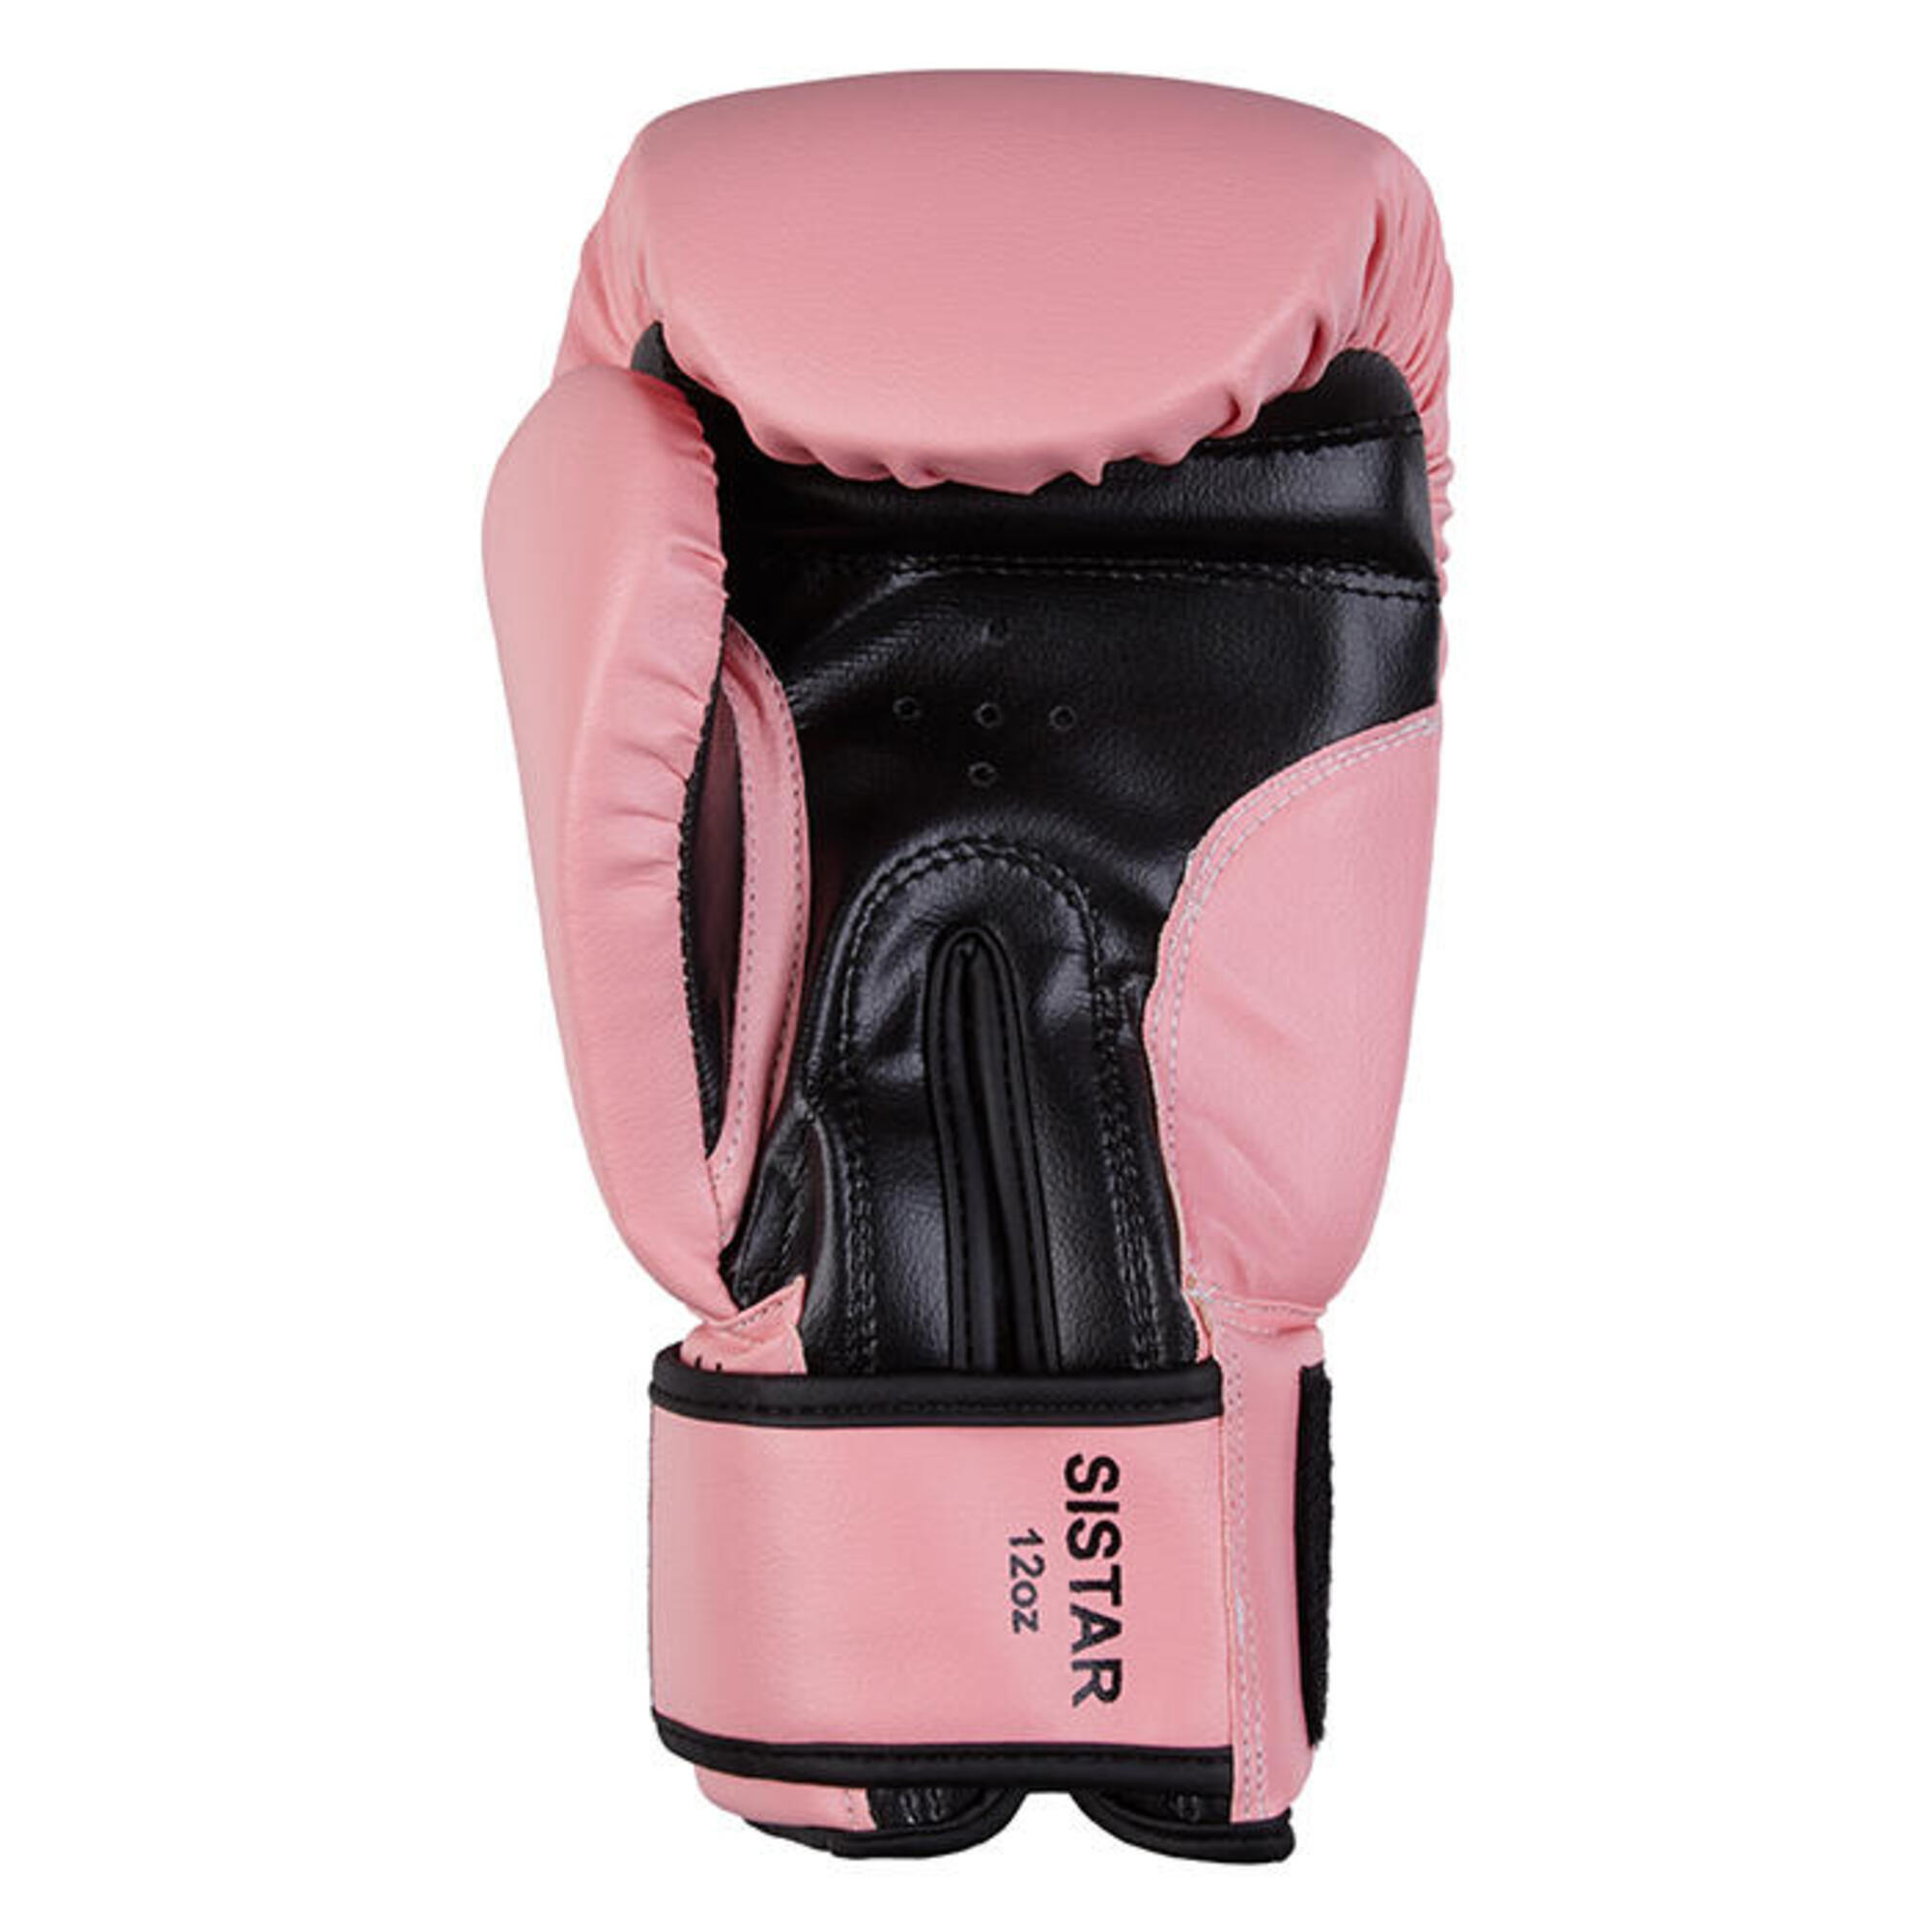 Боксерские перчатки Benlee Sistar 14 oz розовые, розовый перчатки боксерские boybo stain флекс зелёные 6 oz